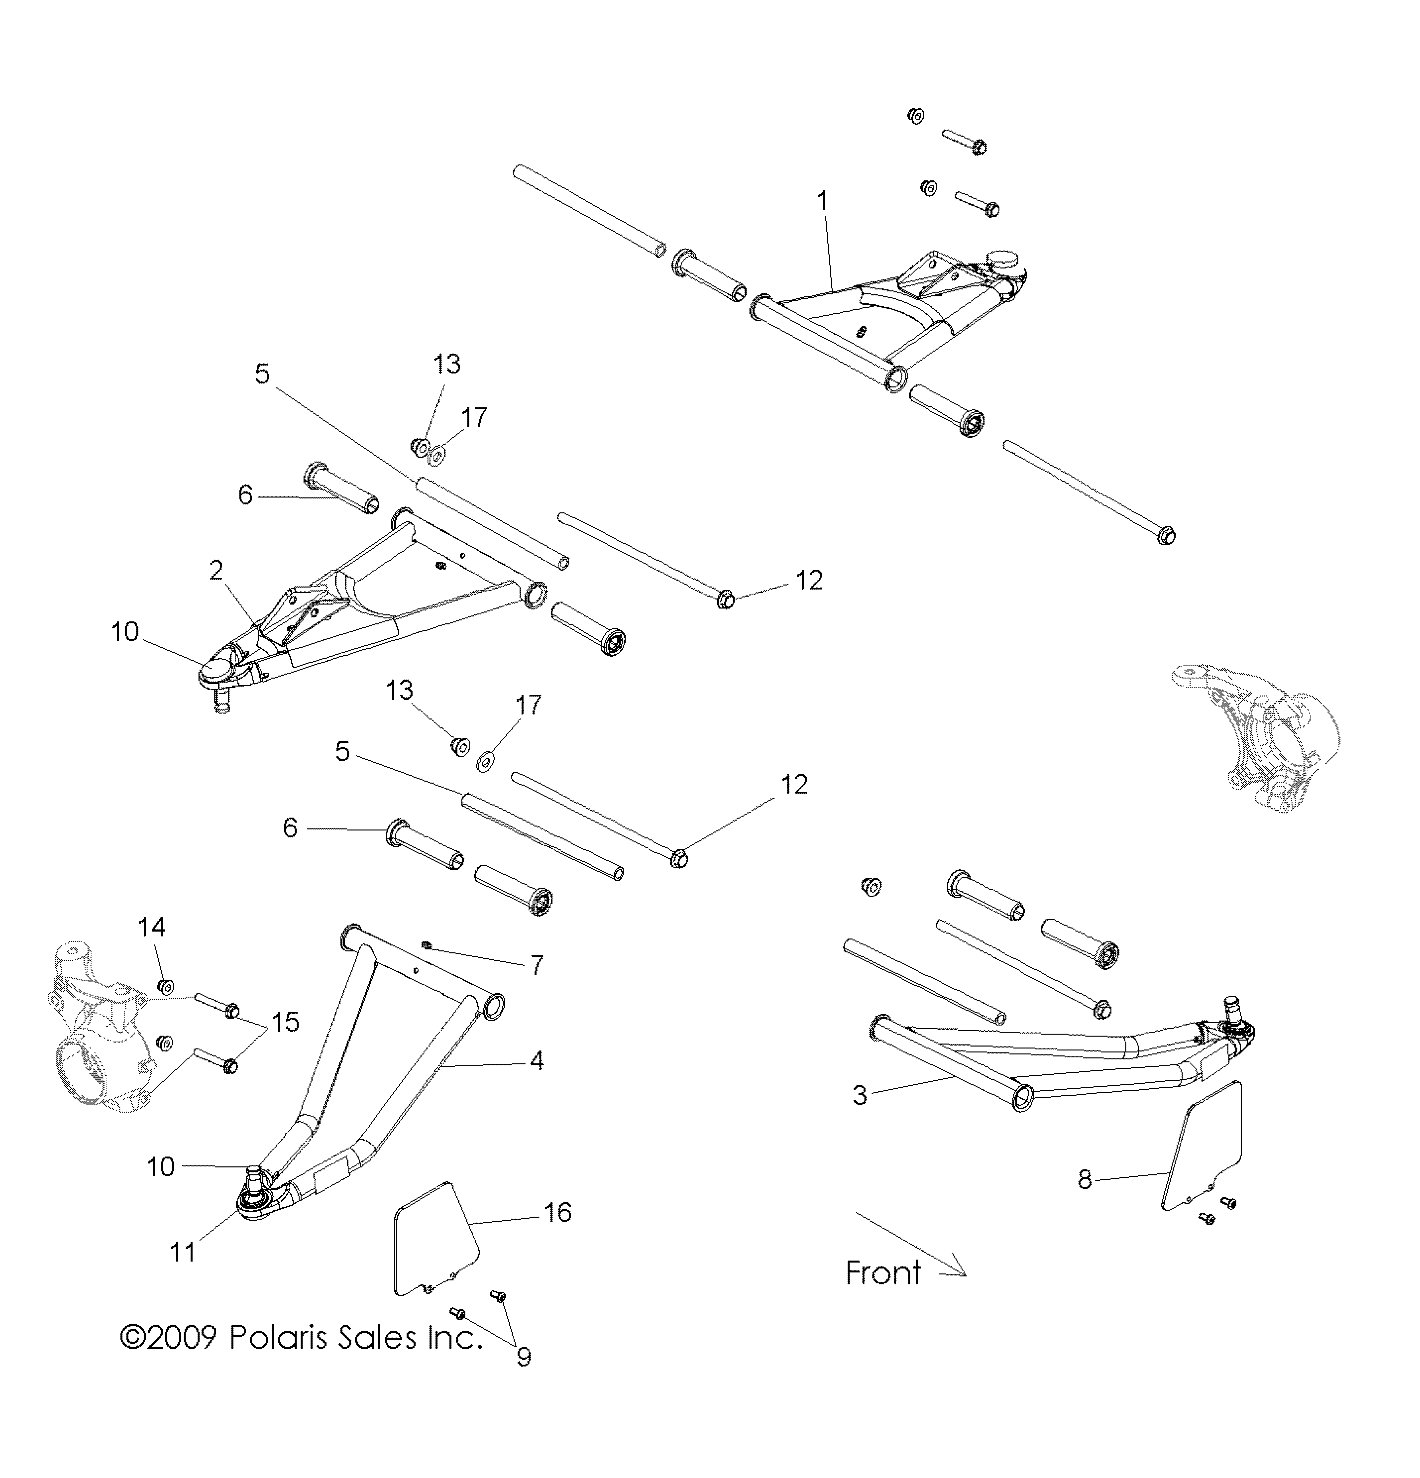 Foto diagrama Polaris que contem a peça 1015455-458